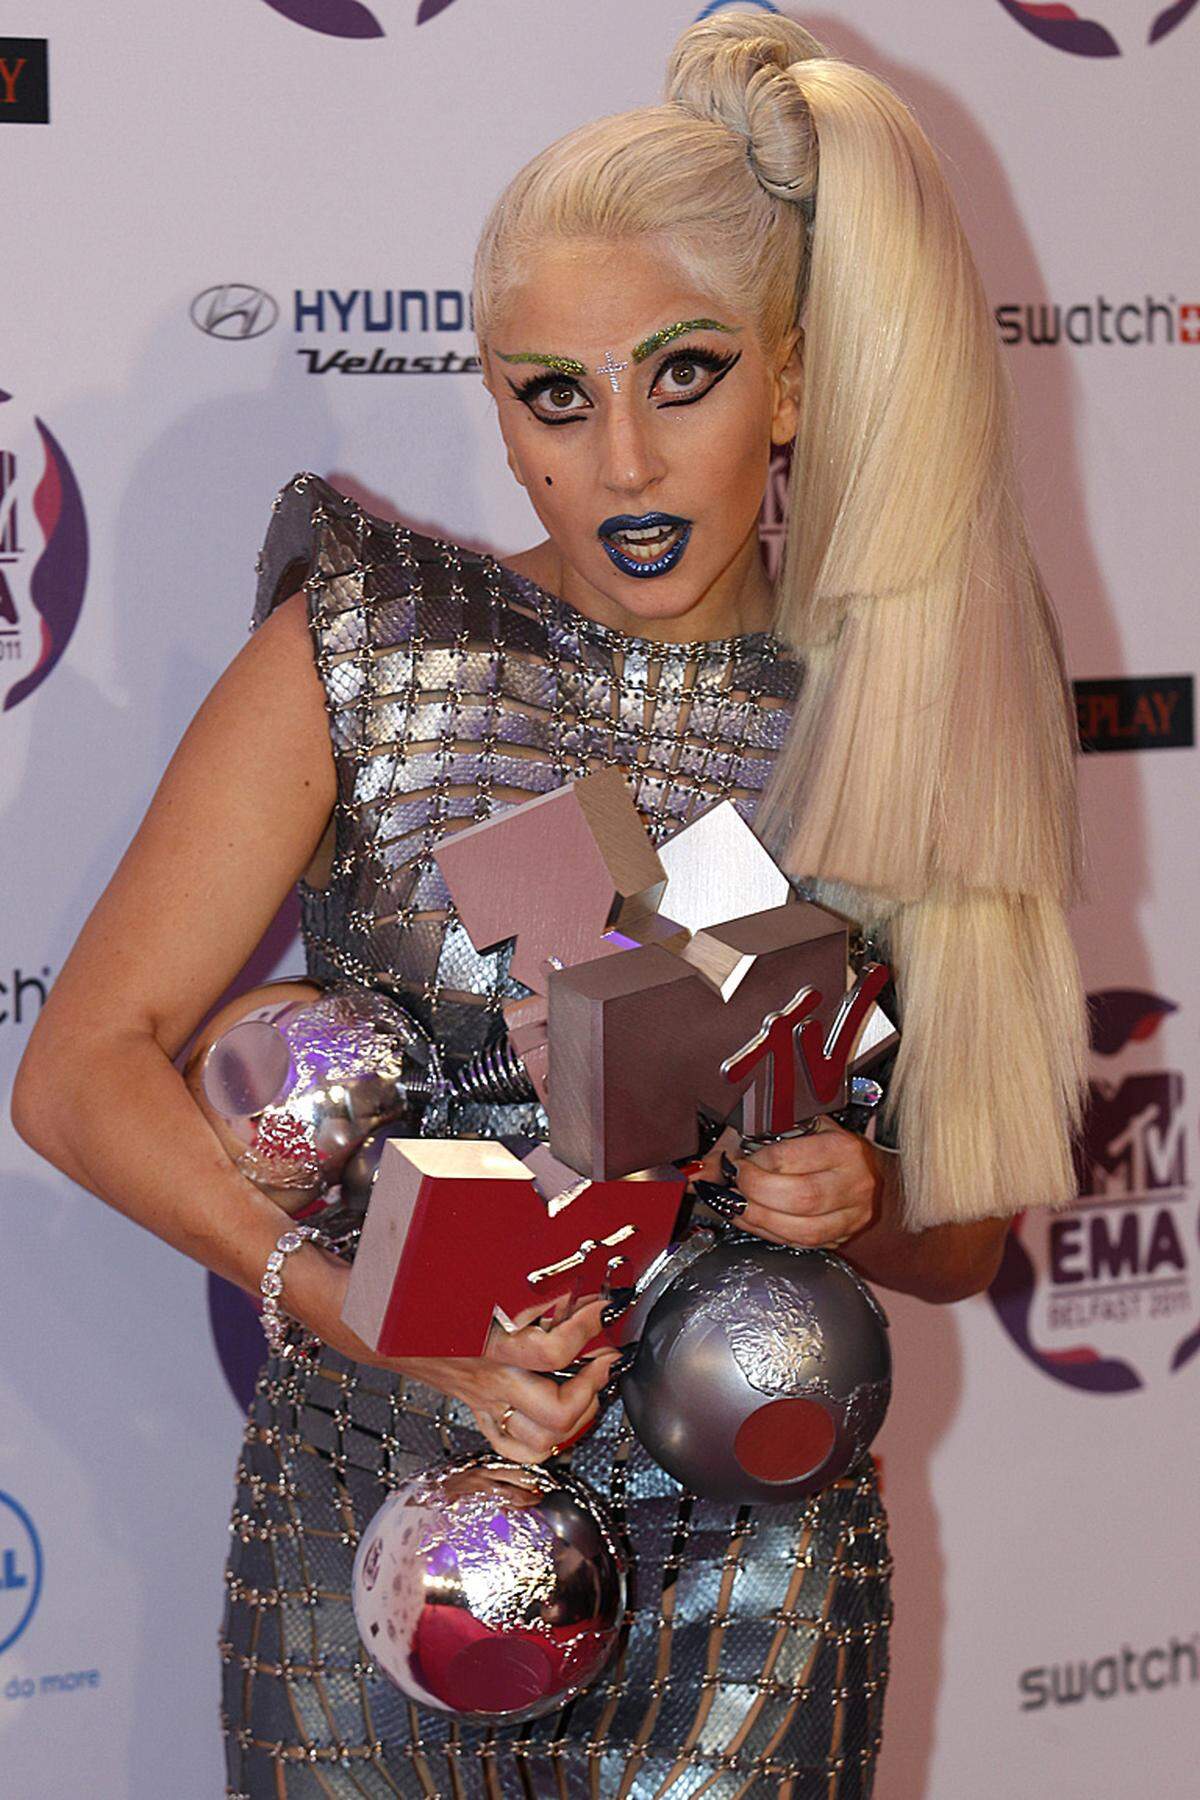 Die 25-Jährige durfte sich über vier Awards freuen: Beste Künstlerin, Bester Song ("Born This Way"), Bestes Video ("Born This Way"), Größte Fans.